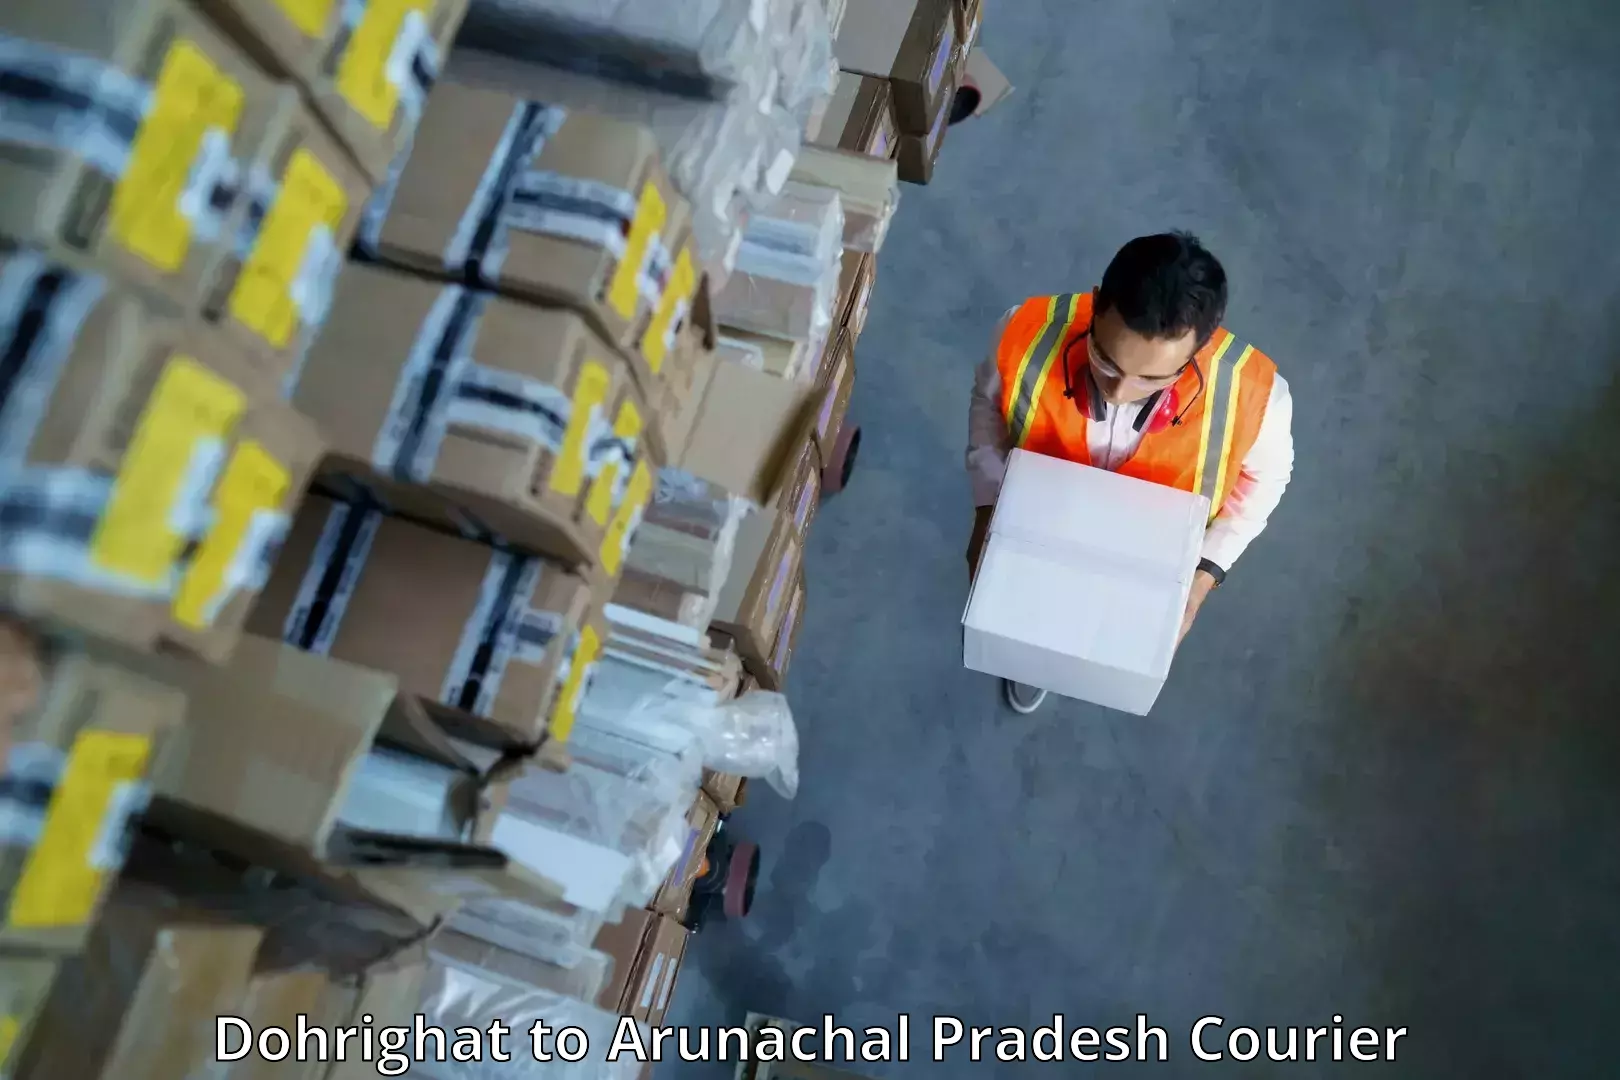 Express logistics service Dohrighat to Arunachal Pradesh